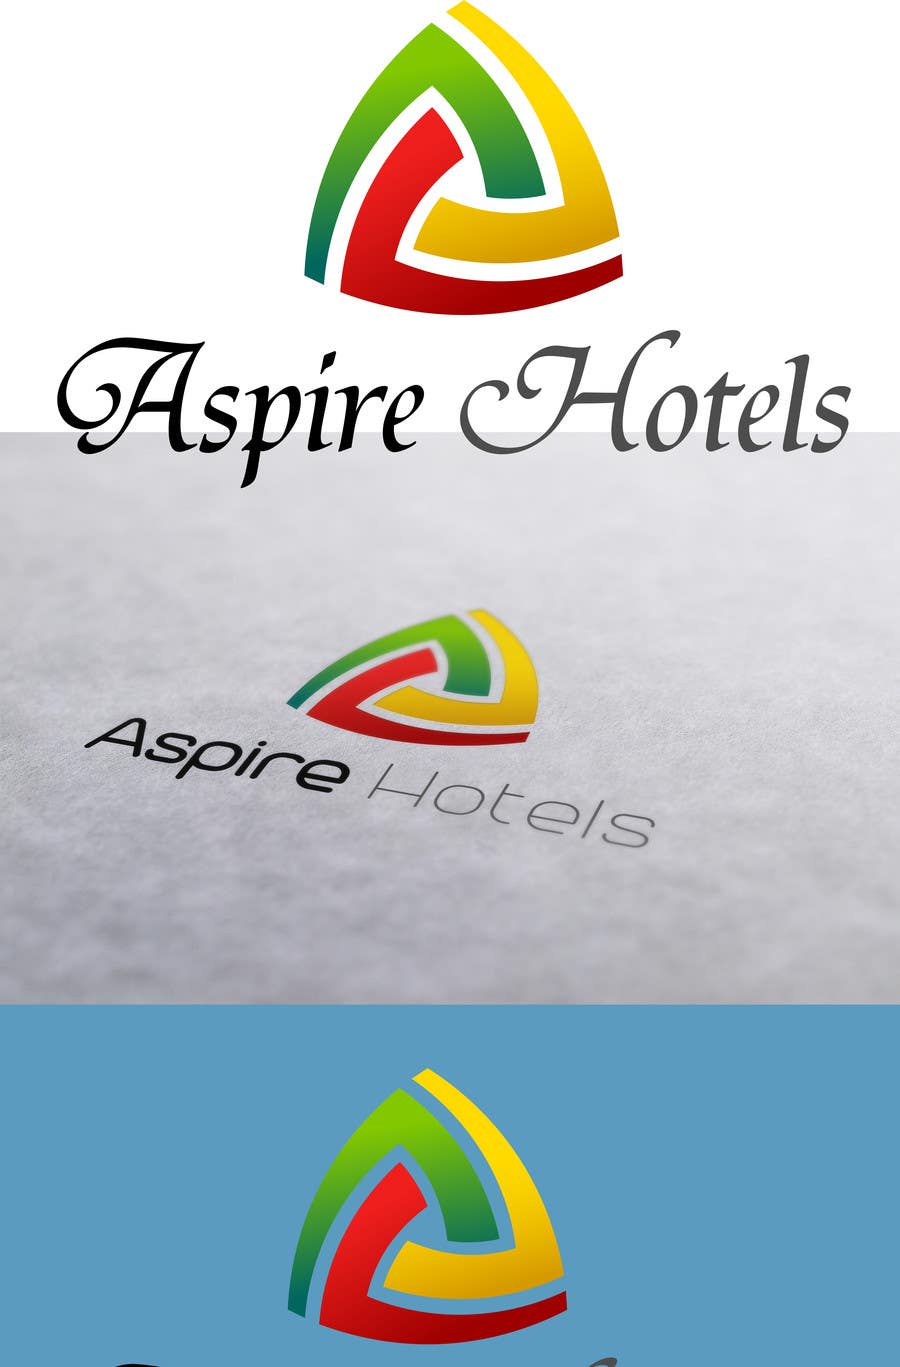 Zgłoszenie konkursowe o numerze #2203 do konkursu o nazwie                                                 Design a Logo for Hotel
                                            